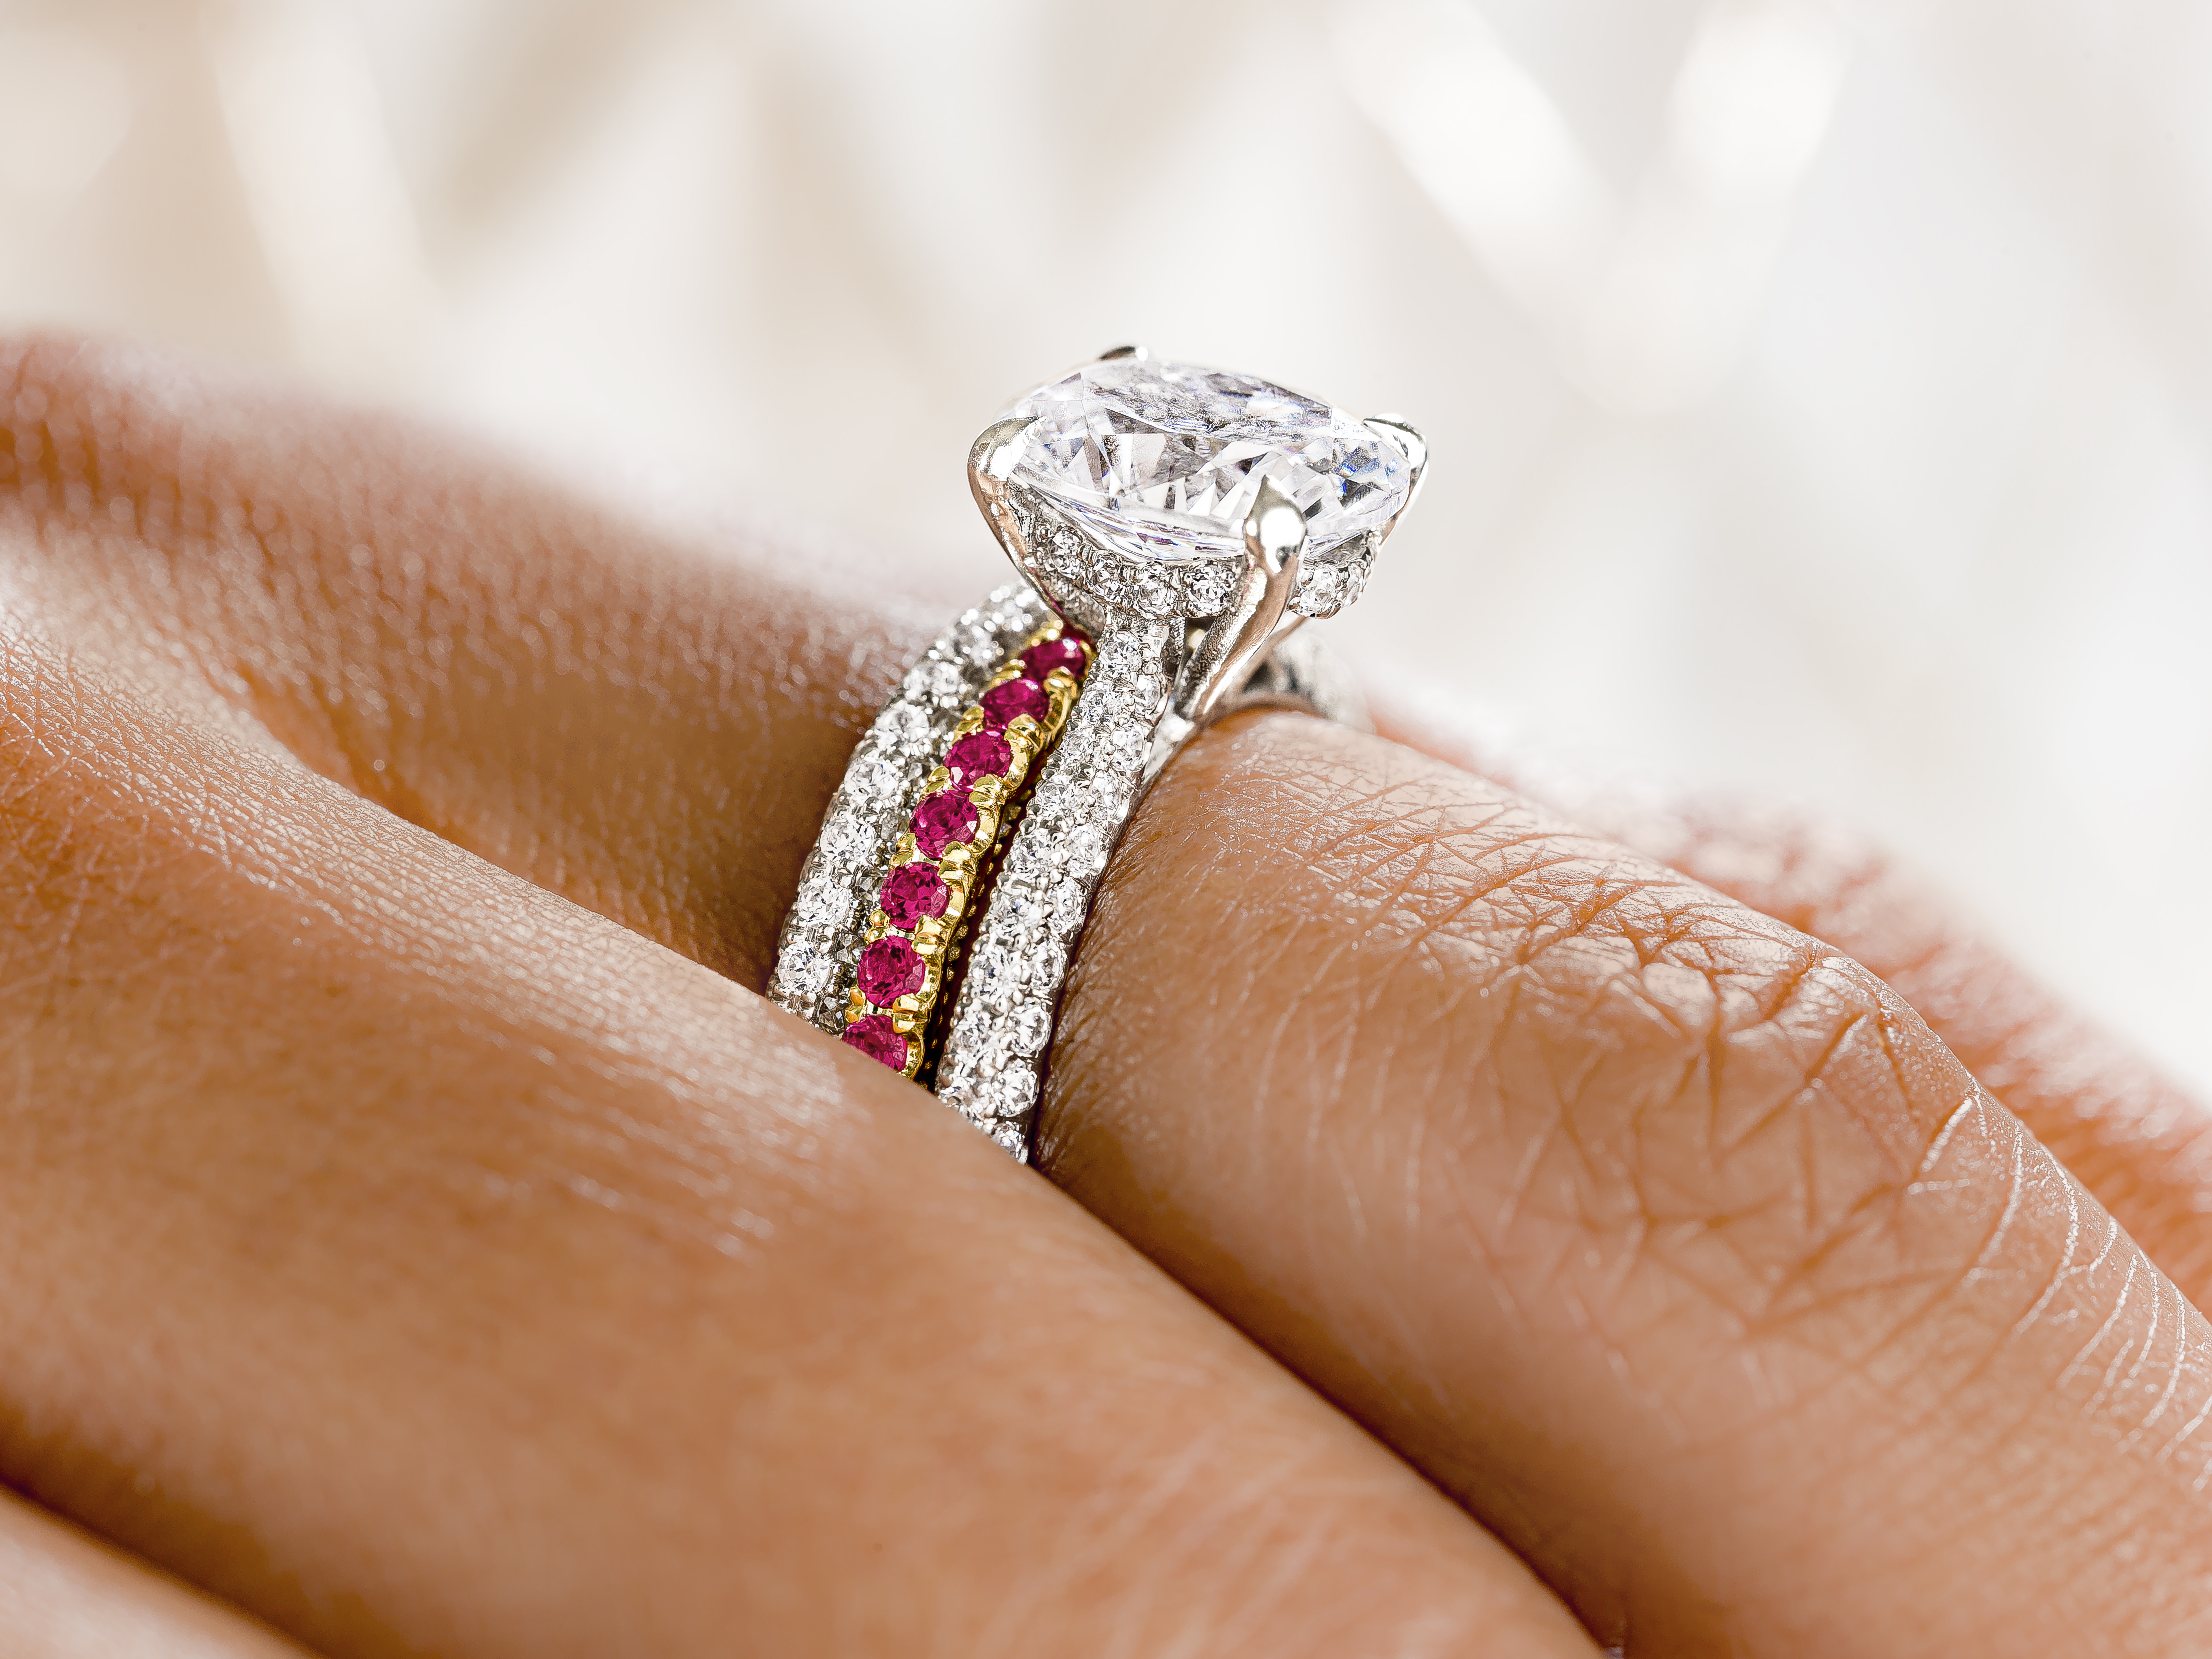 July trend alert: Stackable ruby birthstone rings!